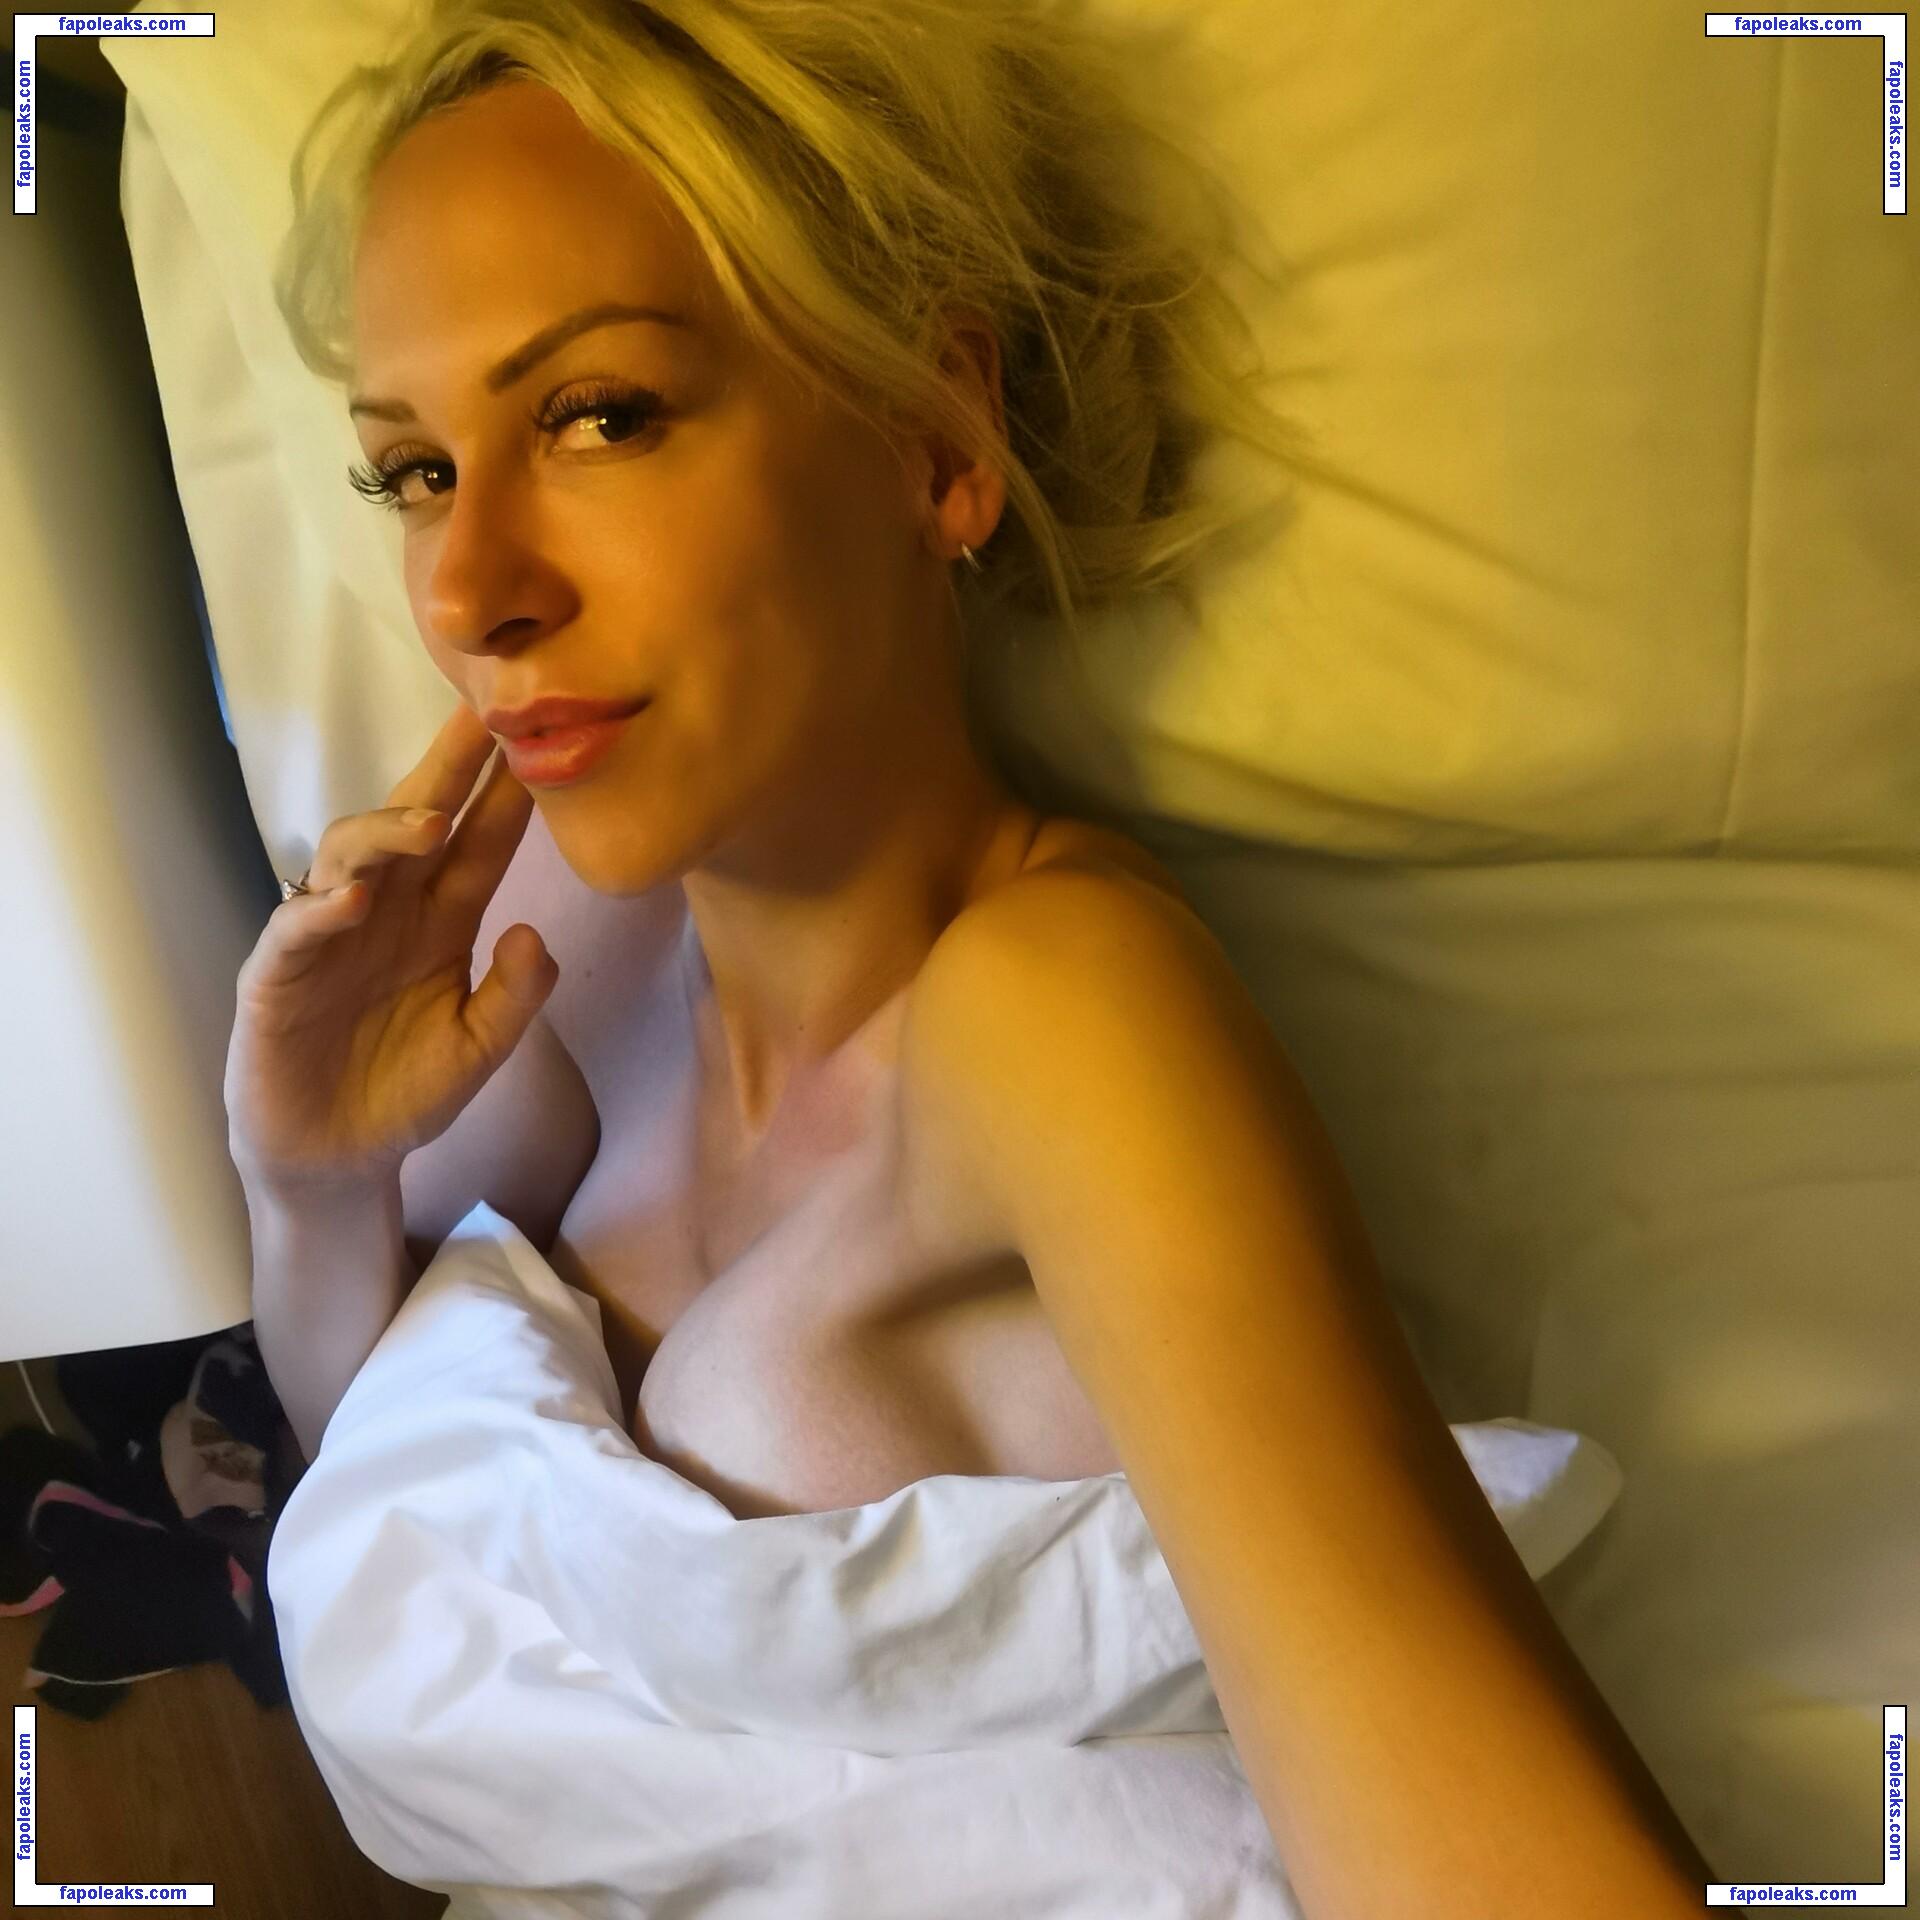 blondymissjuly / Julie hagen / jez132219 nude photo #0028 from OnlyFans